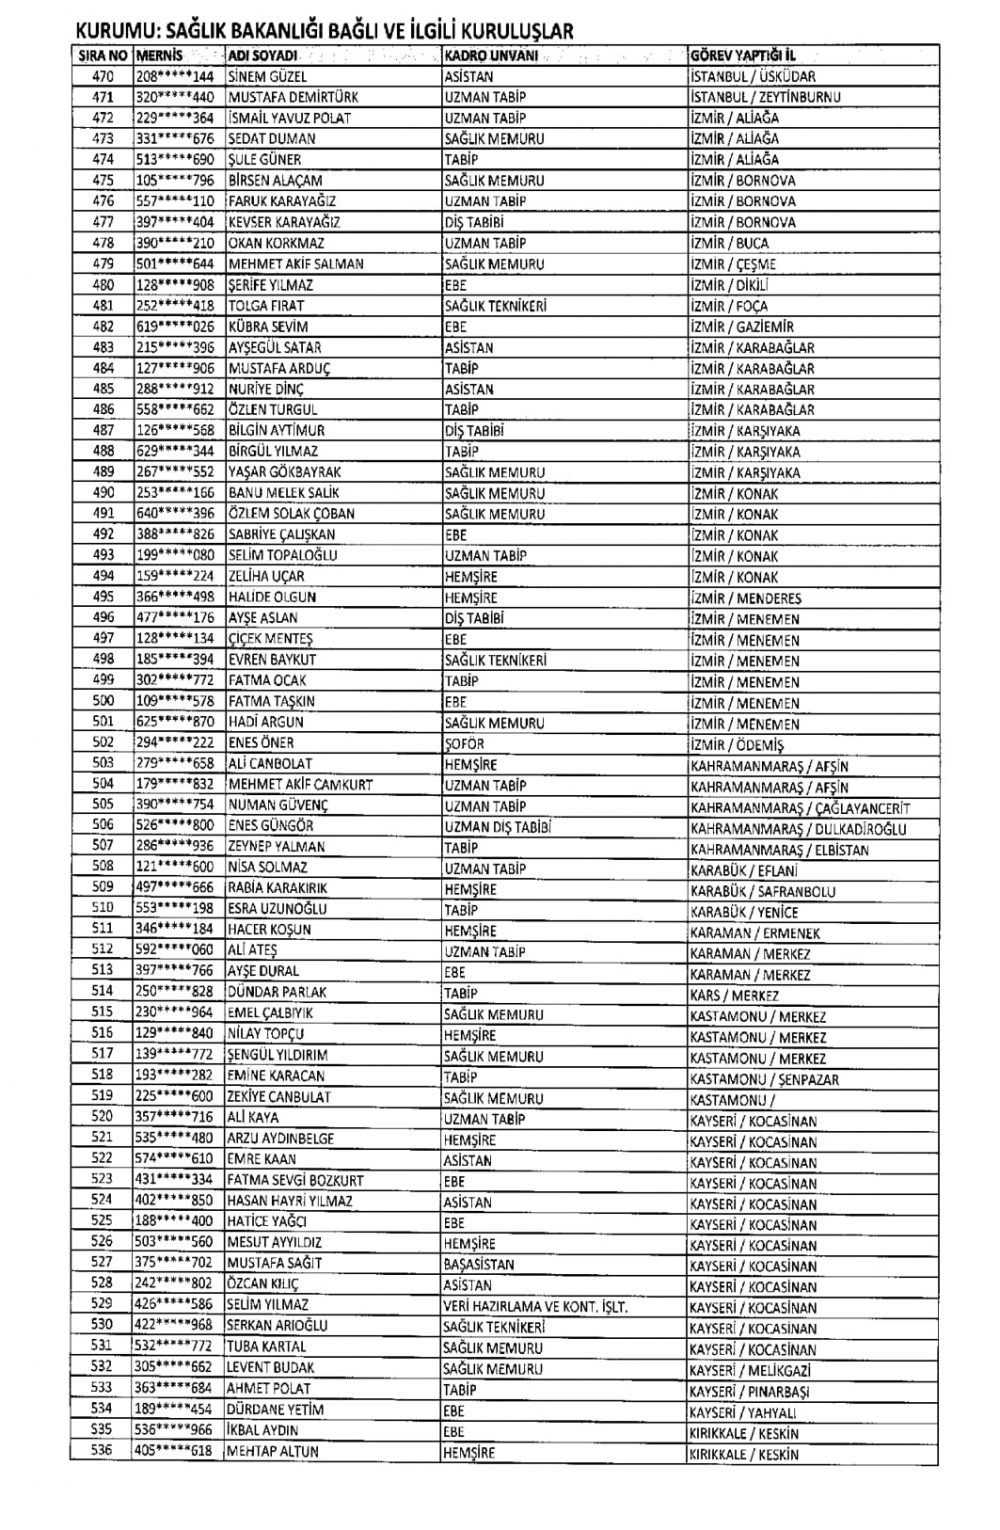 692 sayılı KHK ile ihraç edilenlerin tam listesi 178